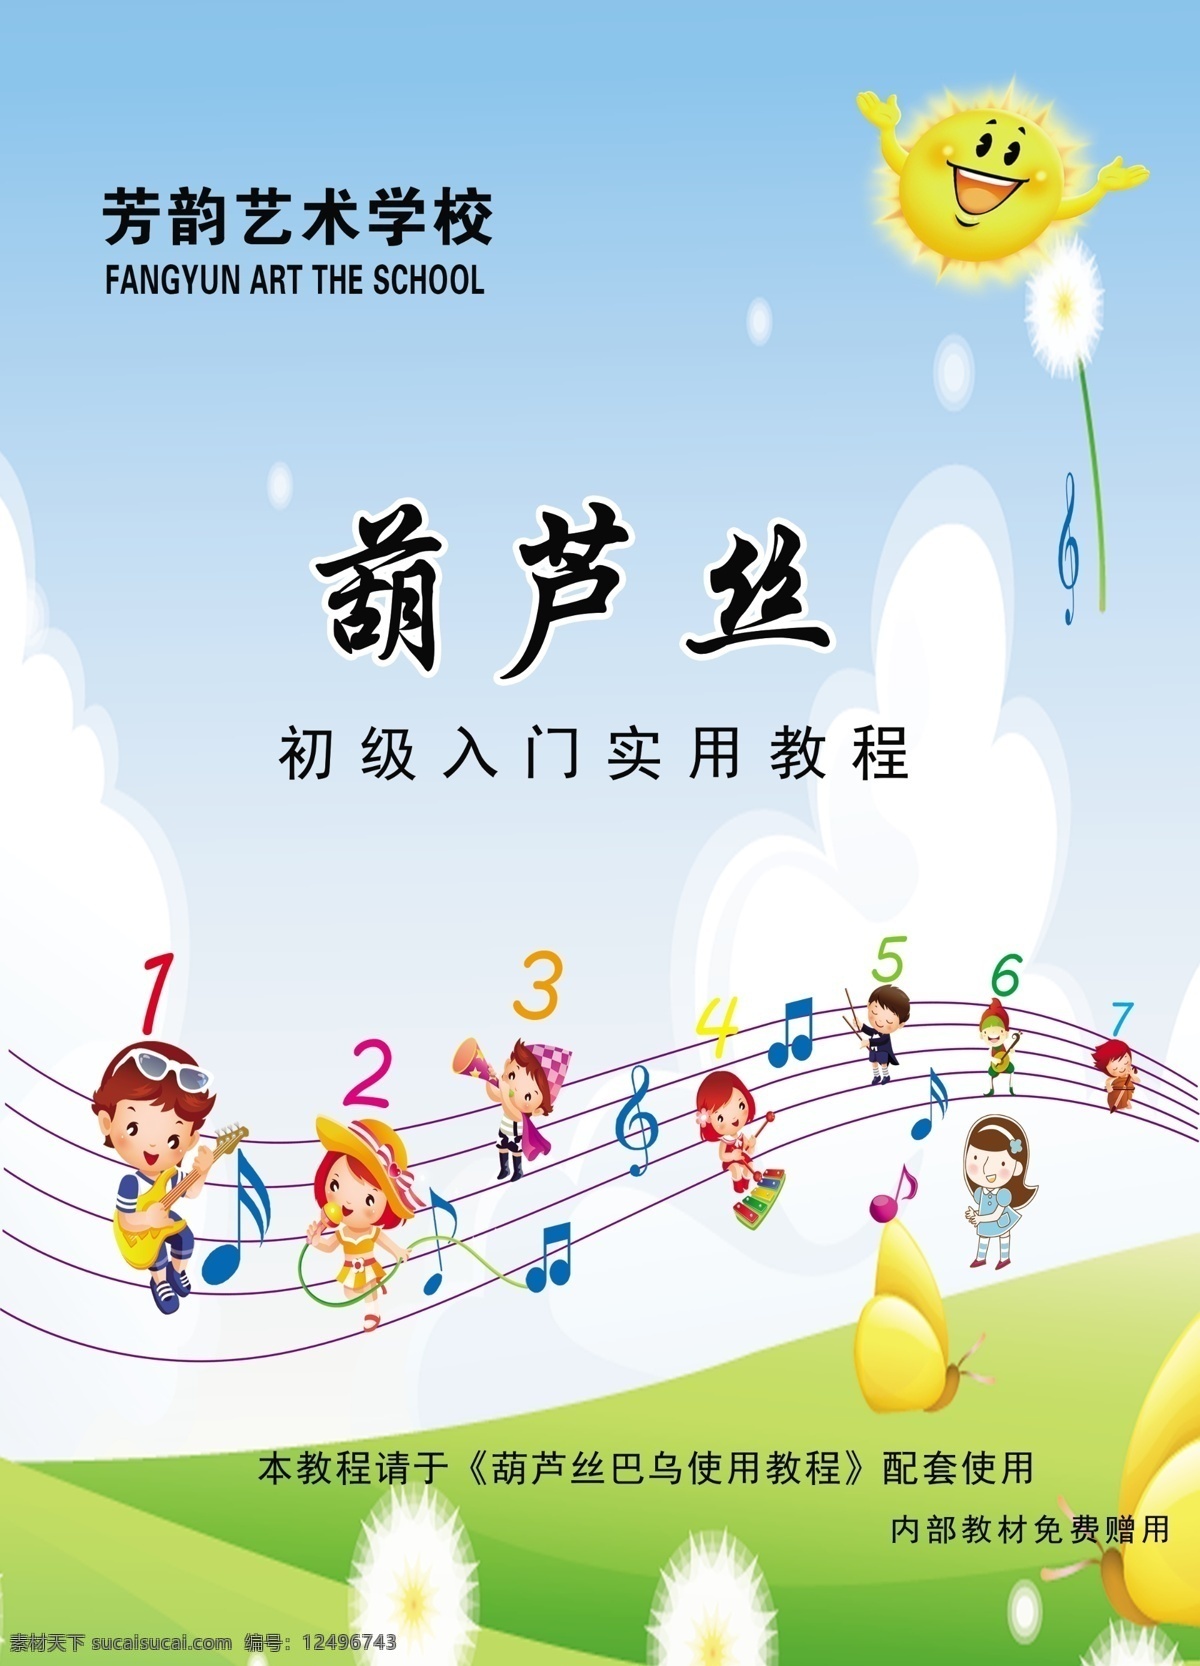 儿童音乐 葫芦丝 葫芦丝海报 音乐课本封皮 音乐符号 儿童音乐符号 文化艺术 传统文化